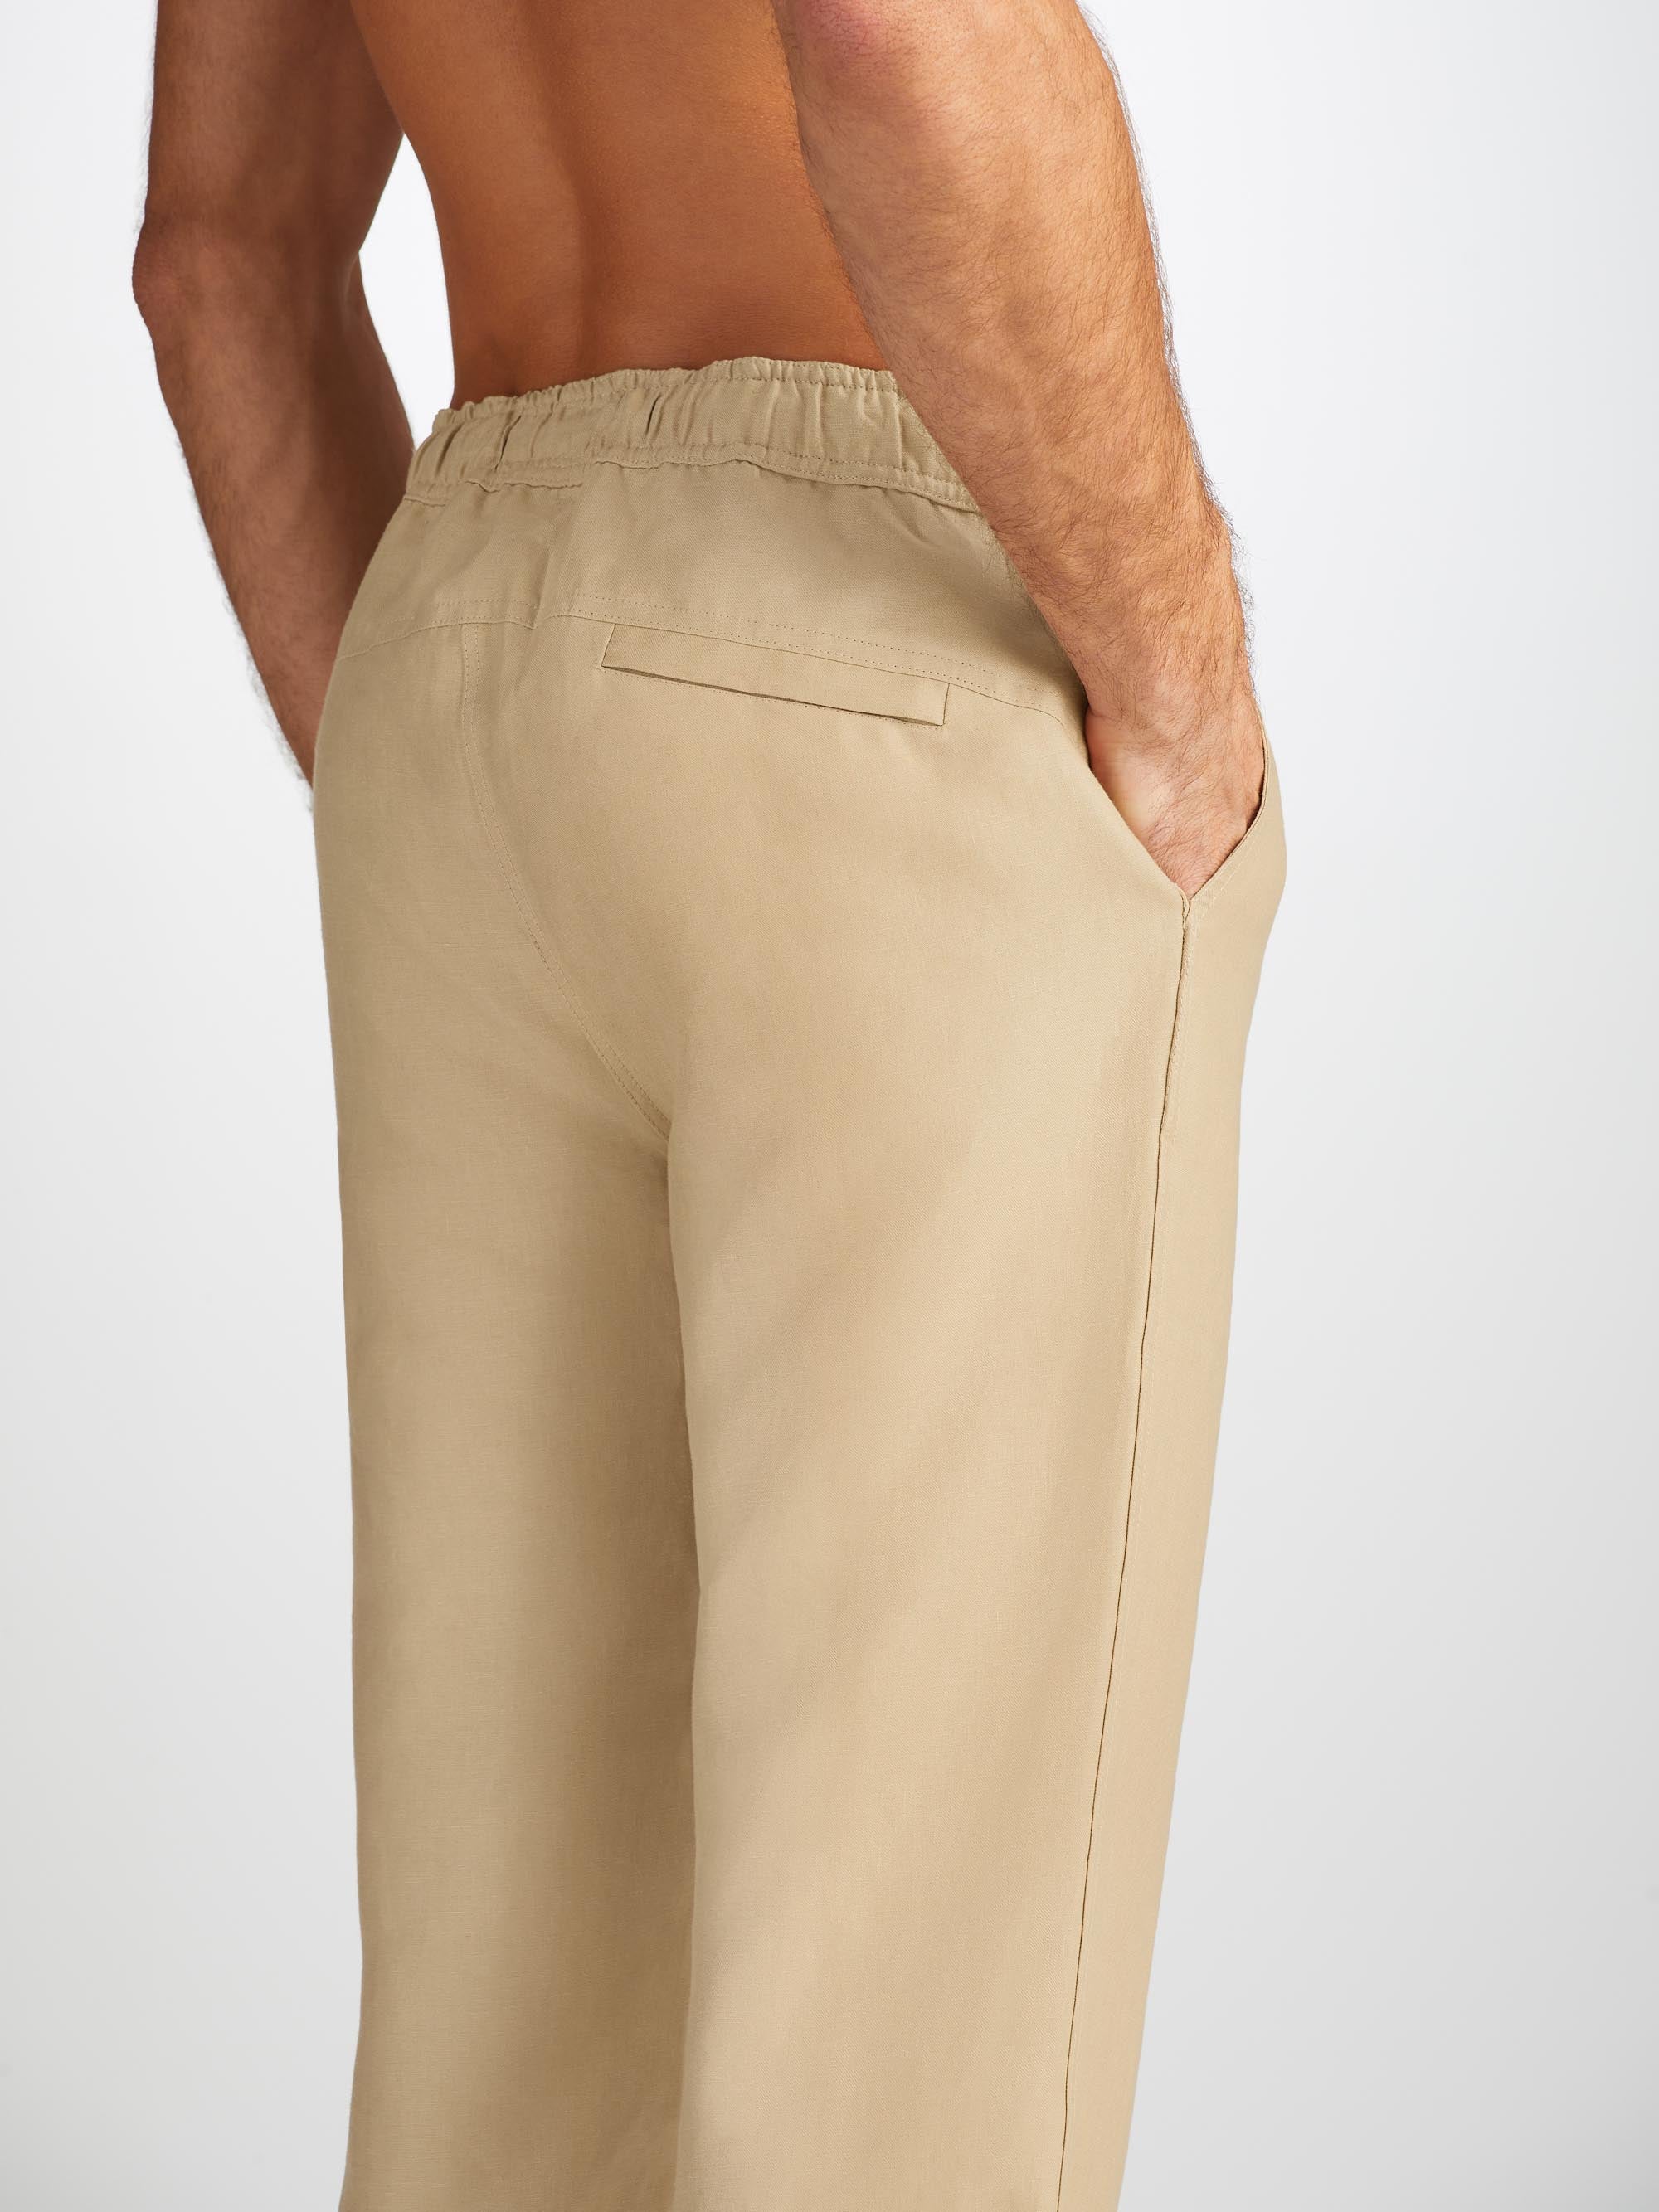 Men's Trousers Sydney Linen Sand